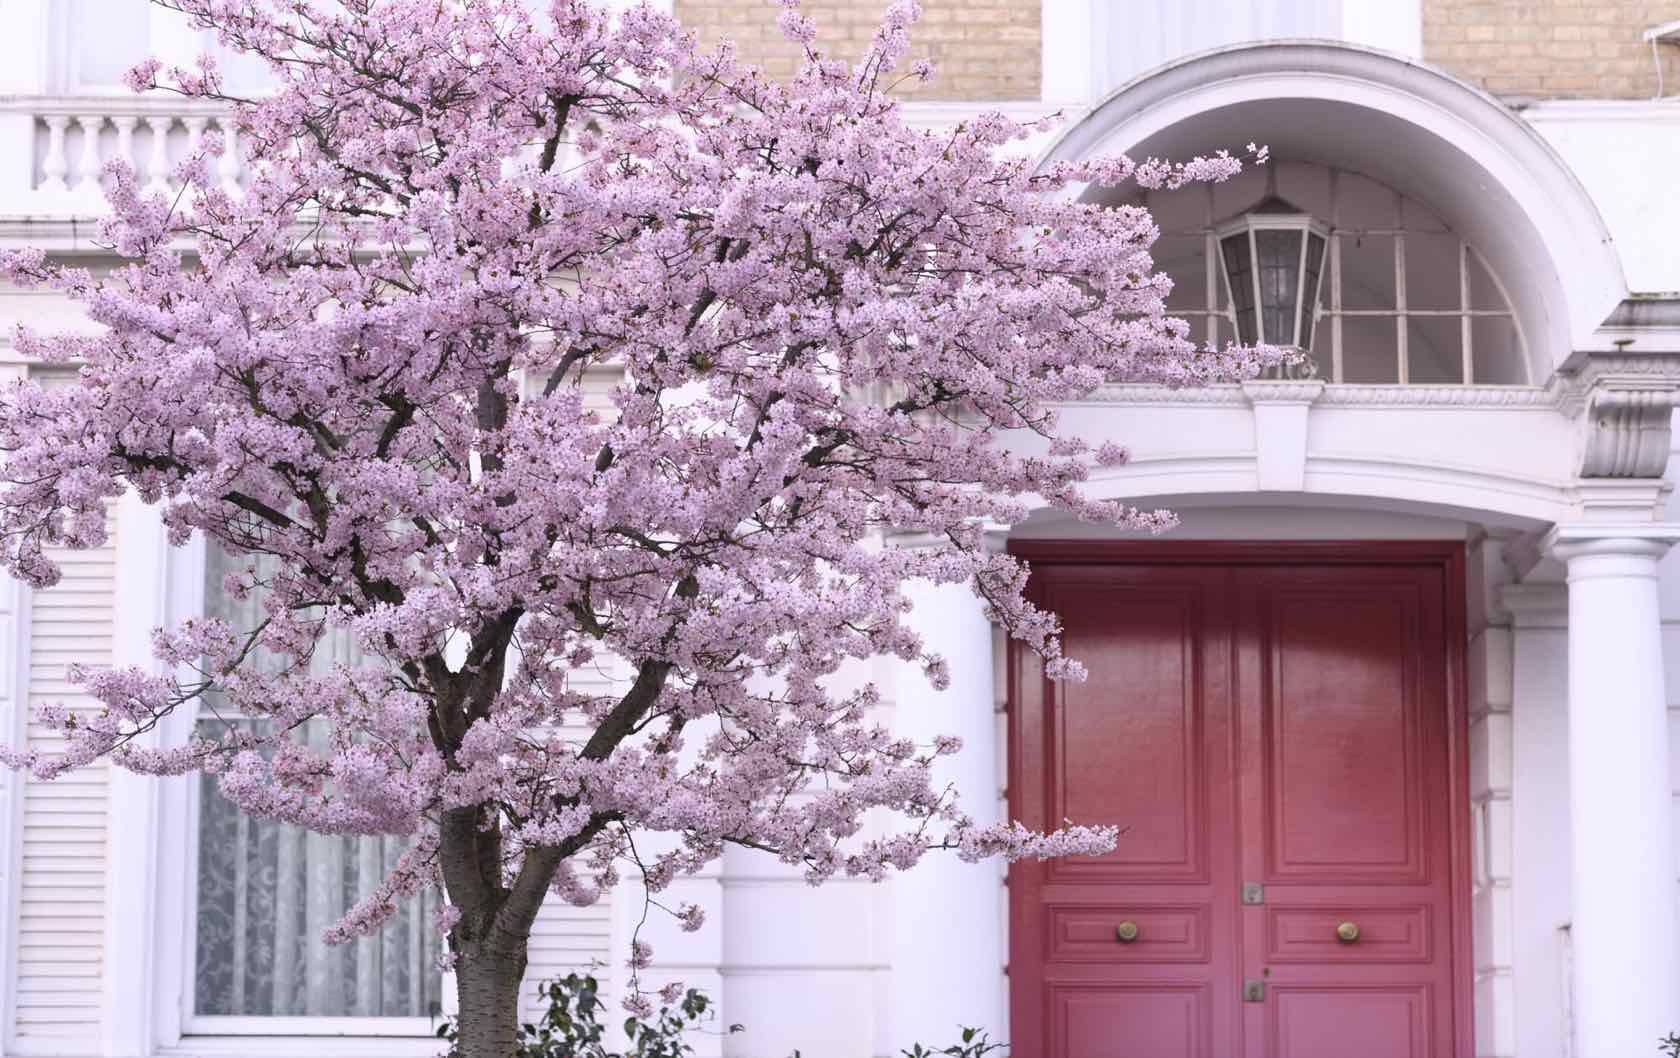 Spring flowers in London